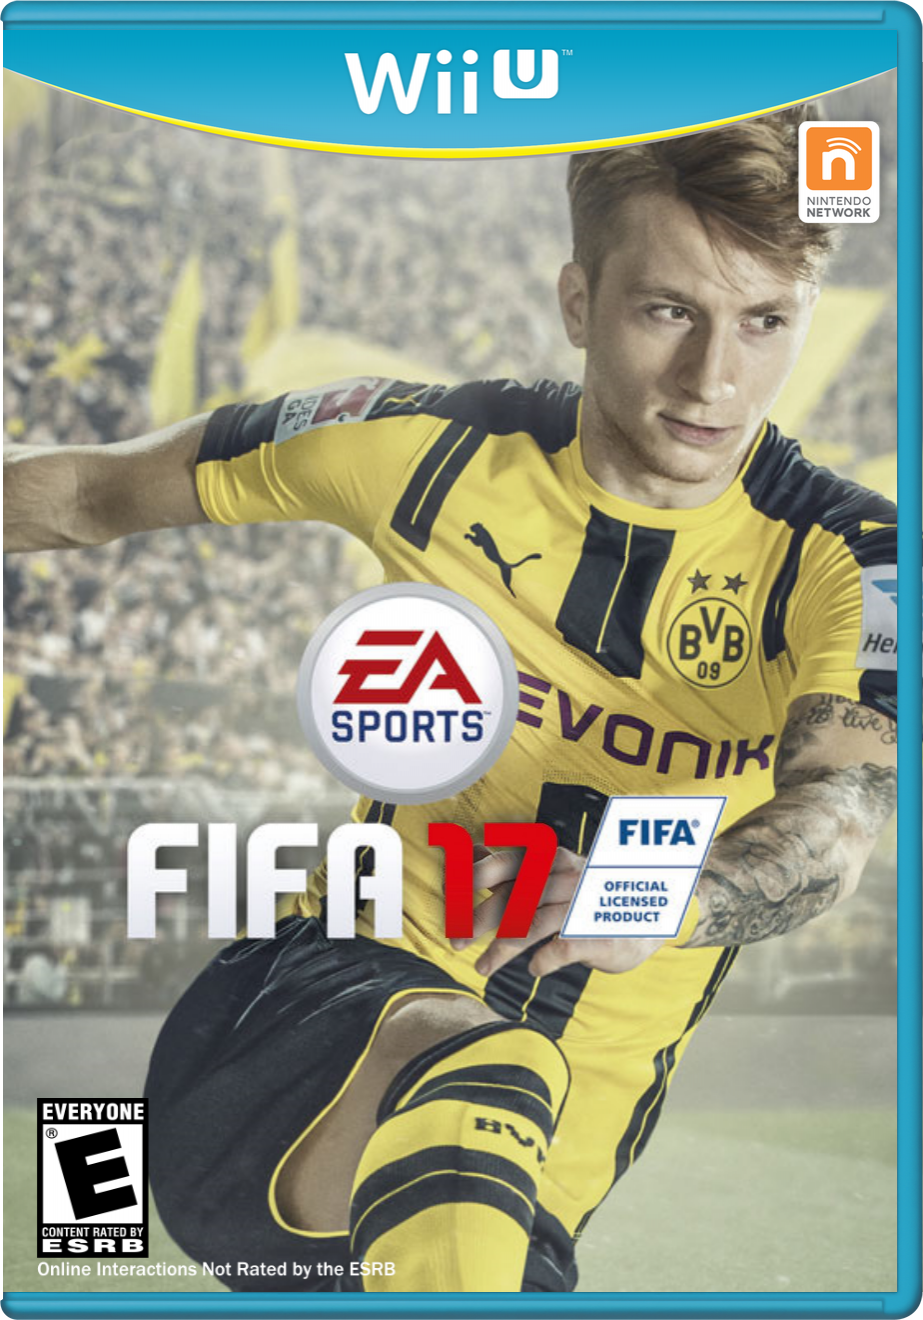 FIFA 17 box cover